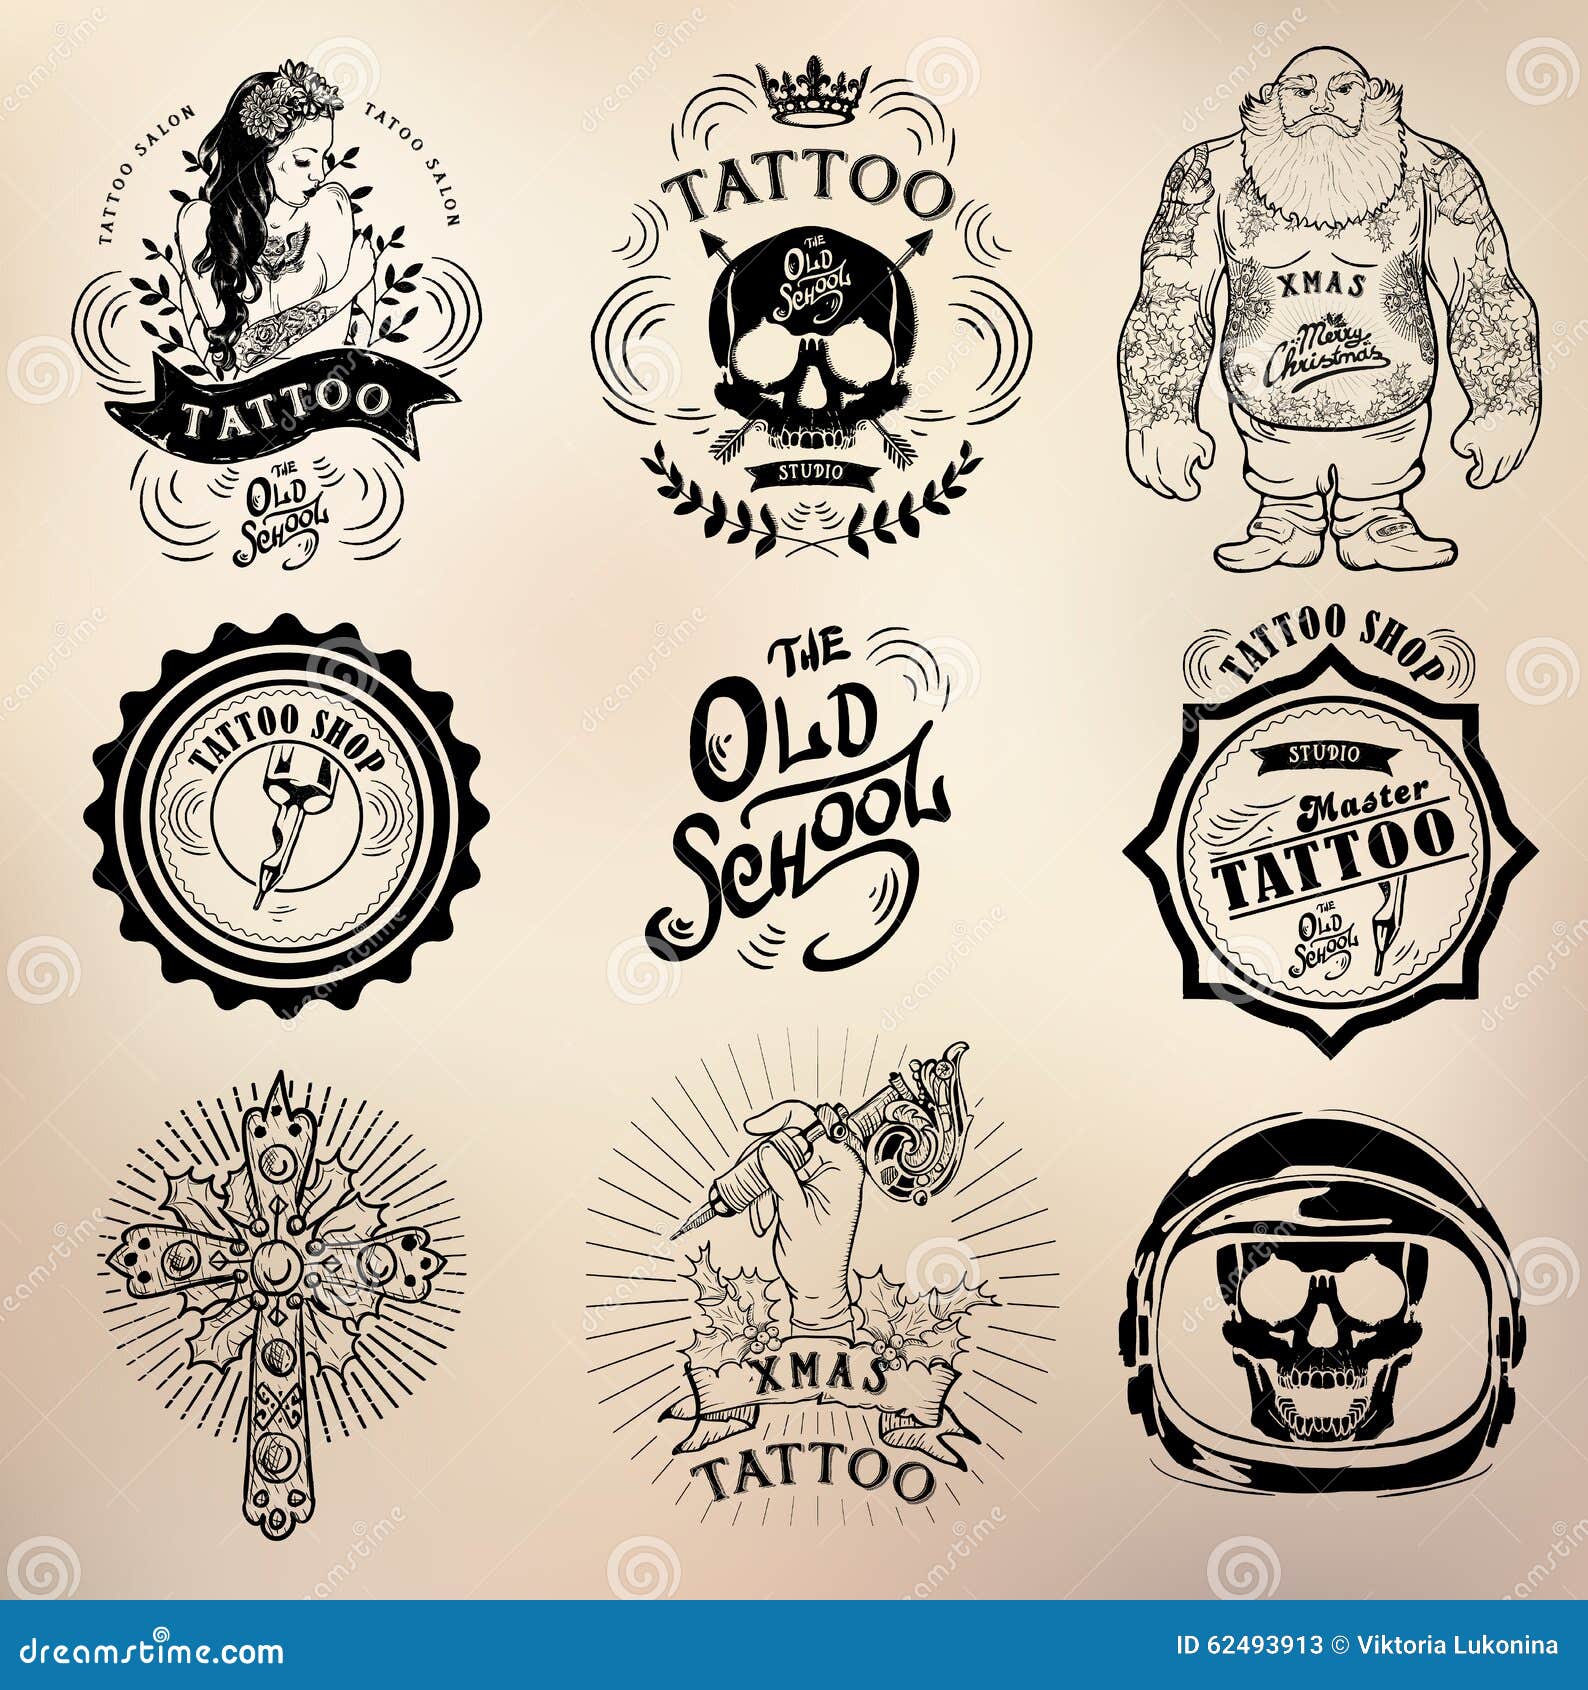 Tattoo Old School Studio Skull Stock Vector - Illustration of rose,  inspiring: 62493913